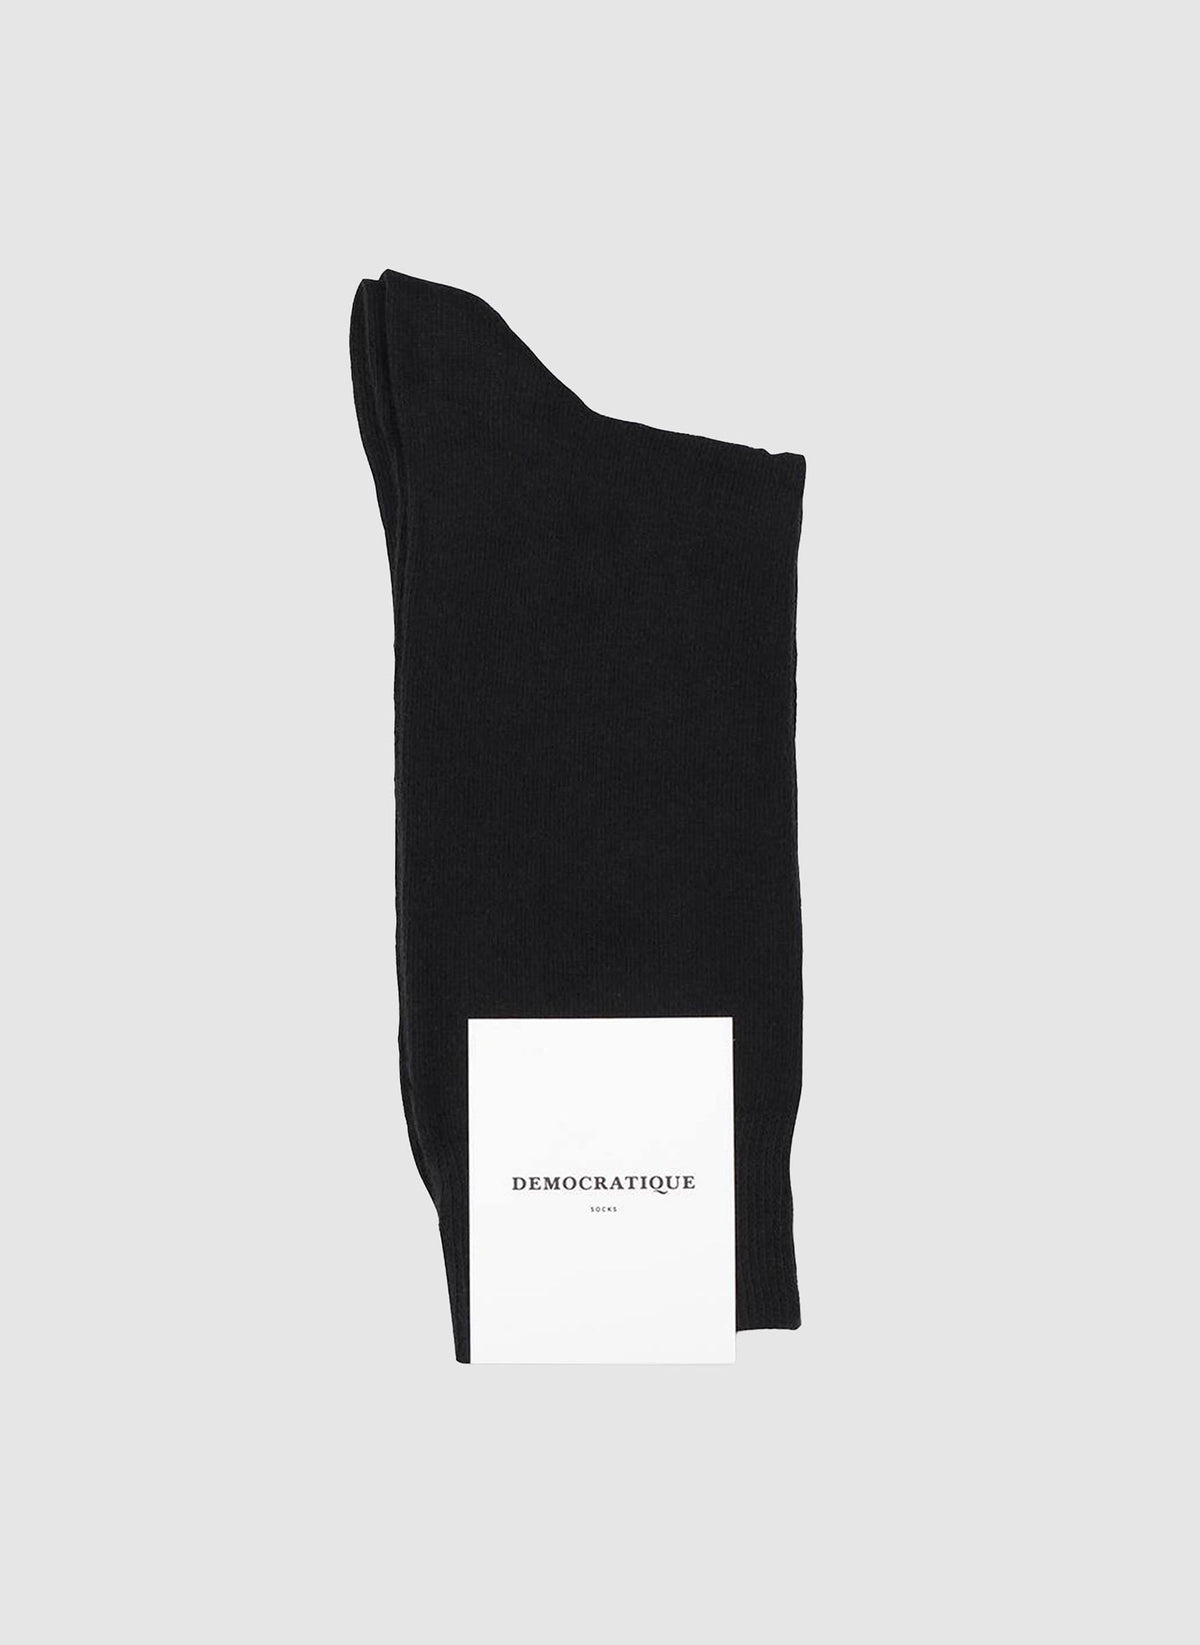 New Originals Solid Socks - Black